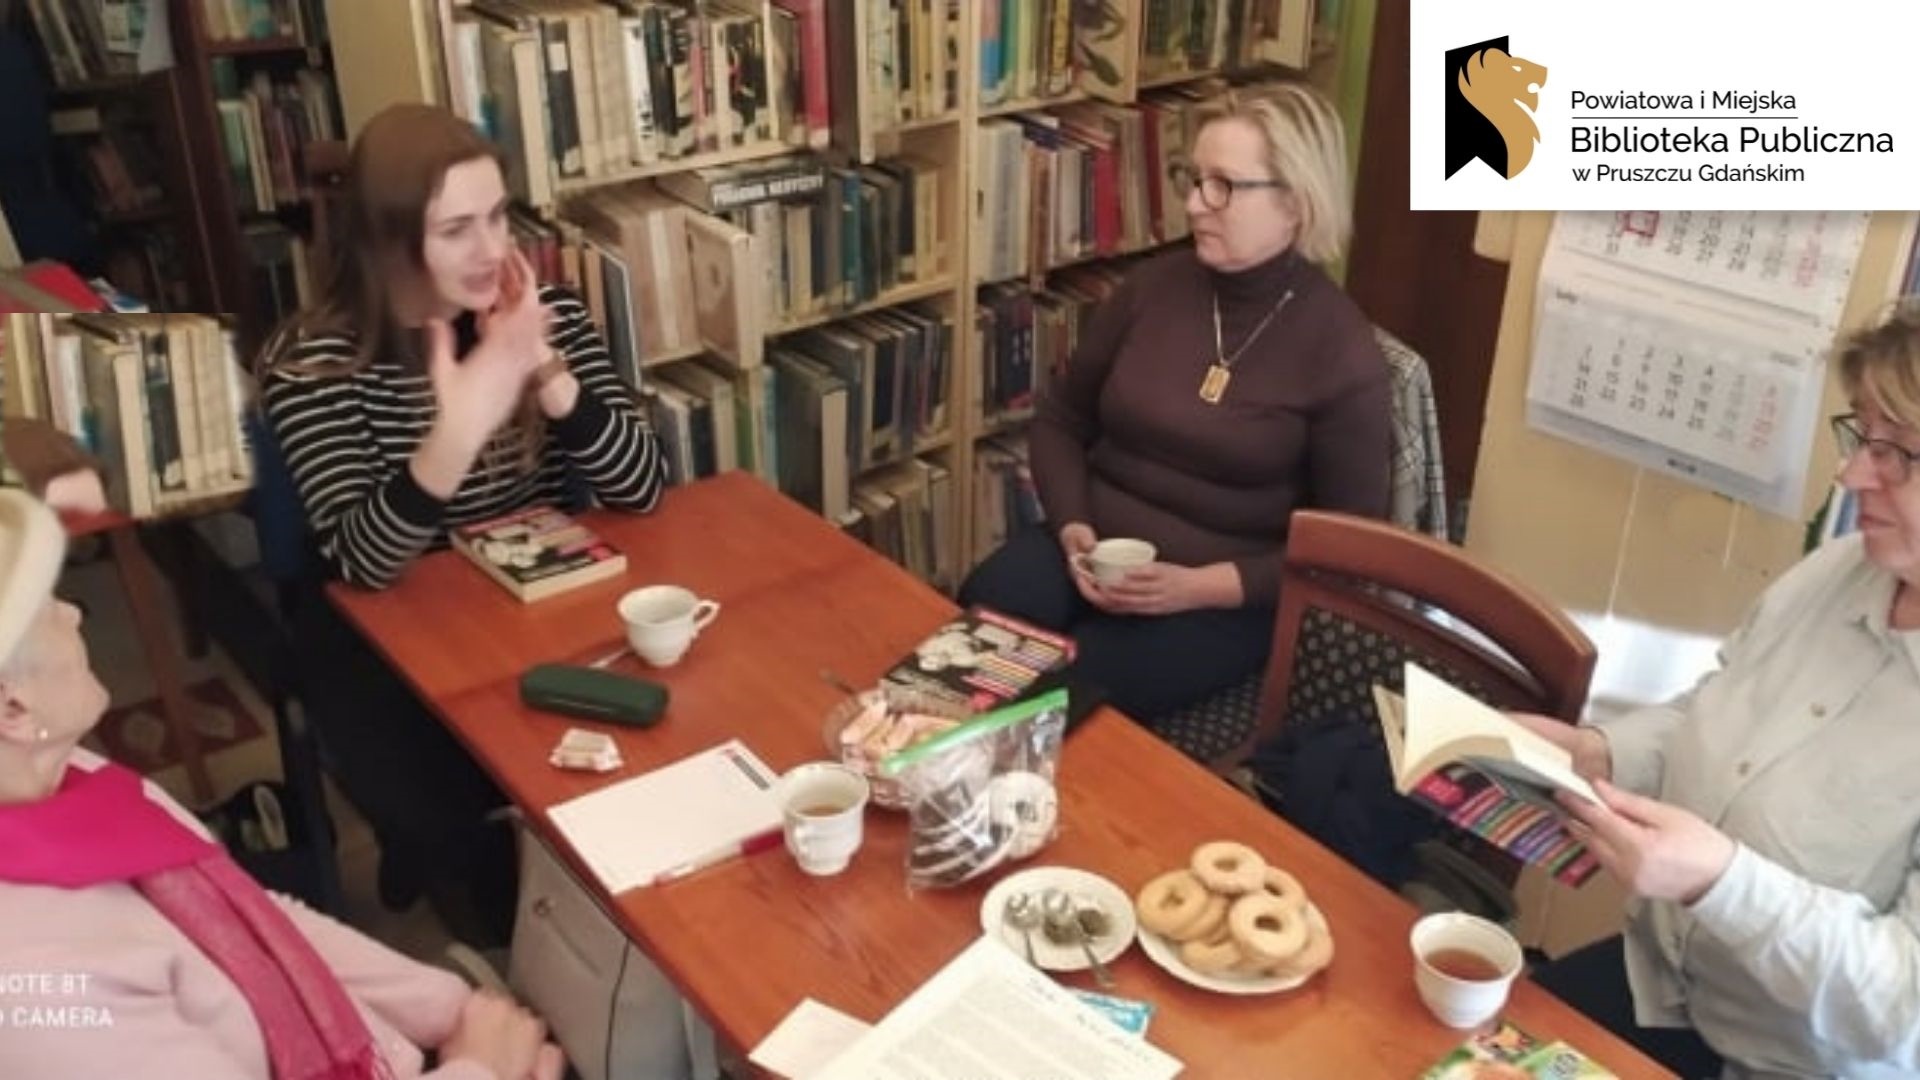 Cztery osoby siedzą przy stole. W tle regały z książkami. Logotyp oraz napis: Powiatowa i Miejska Biblioteka Publiczna w Pruszczu Gdańskim.